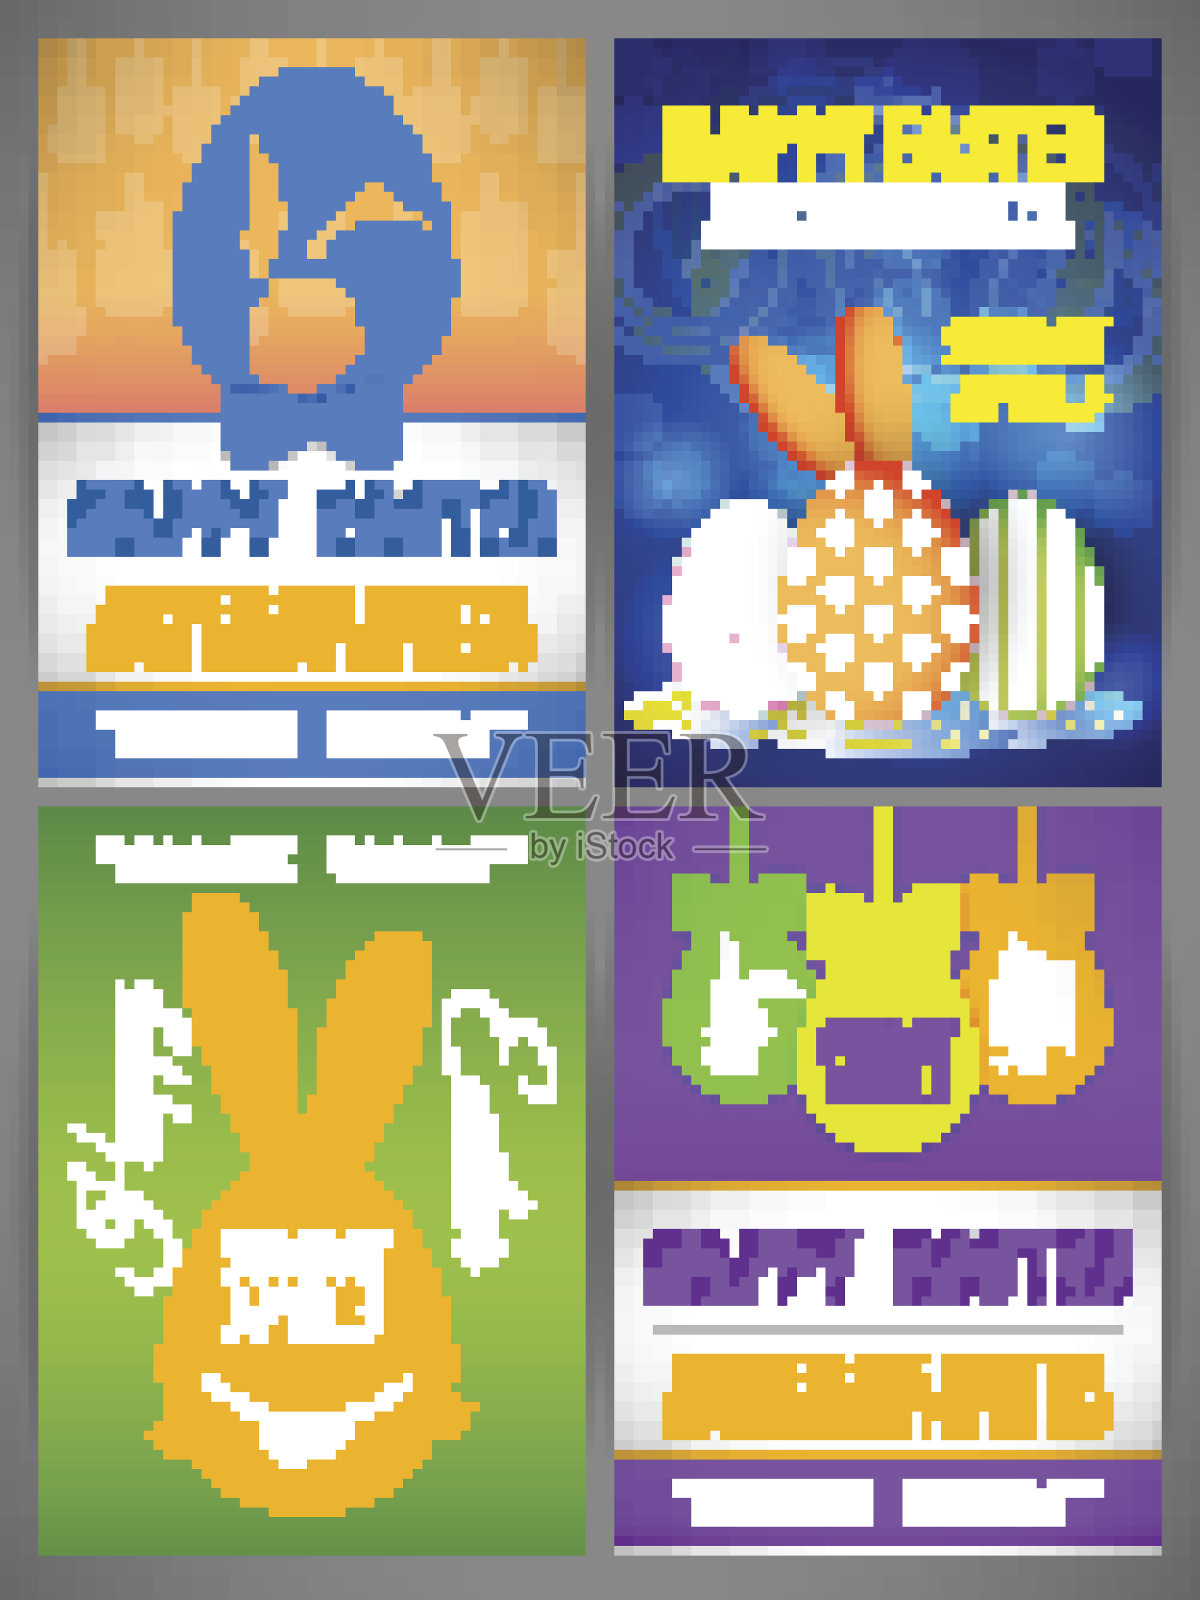 复活节快乐传单模板设置兔子，鸡和鸡蛋插画图片素材